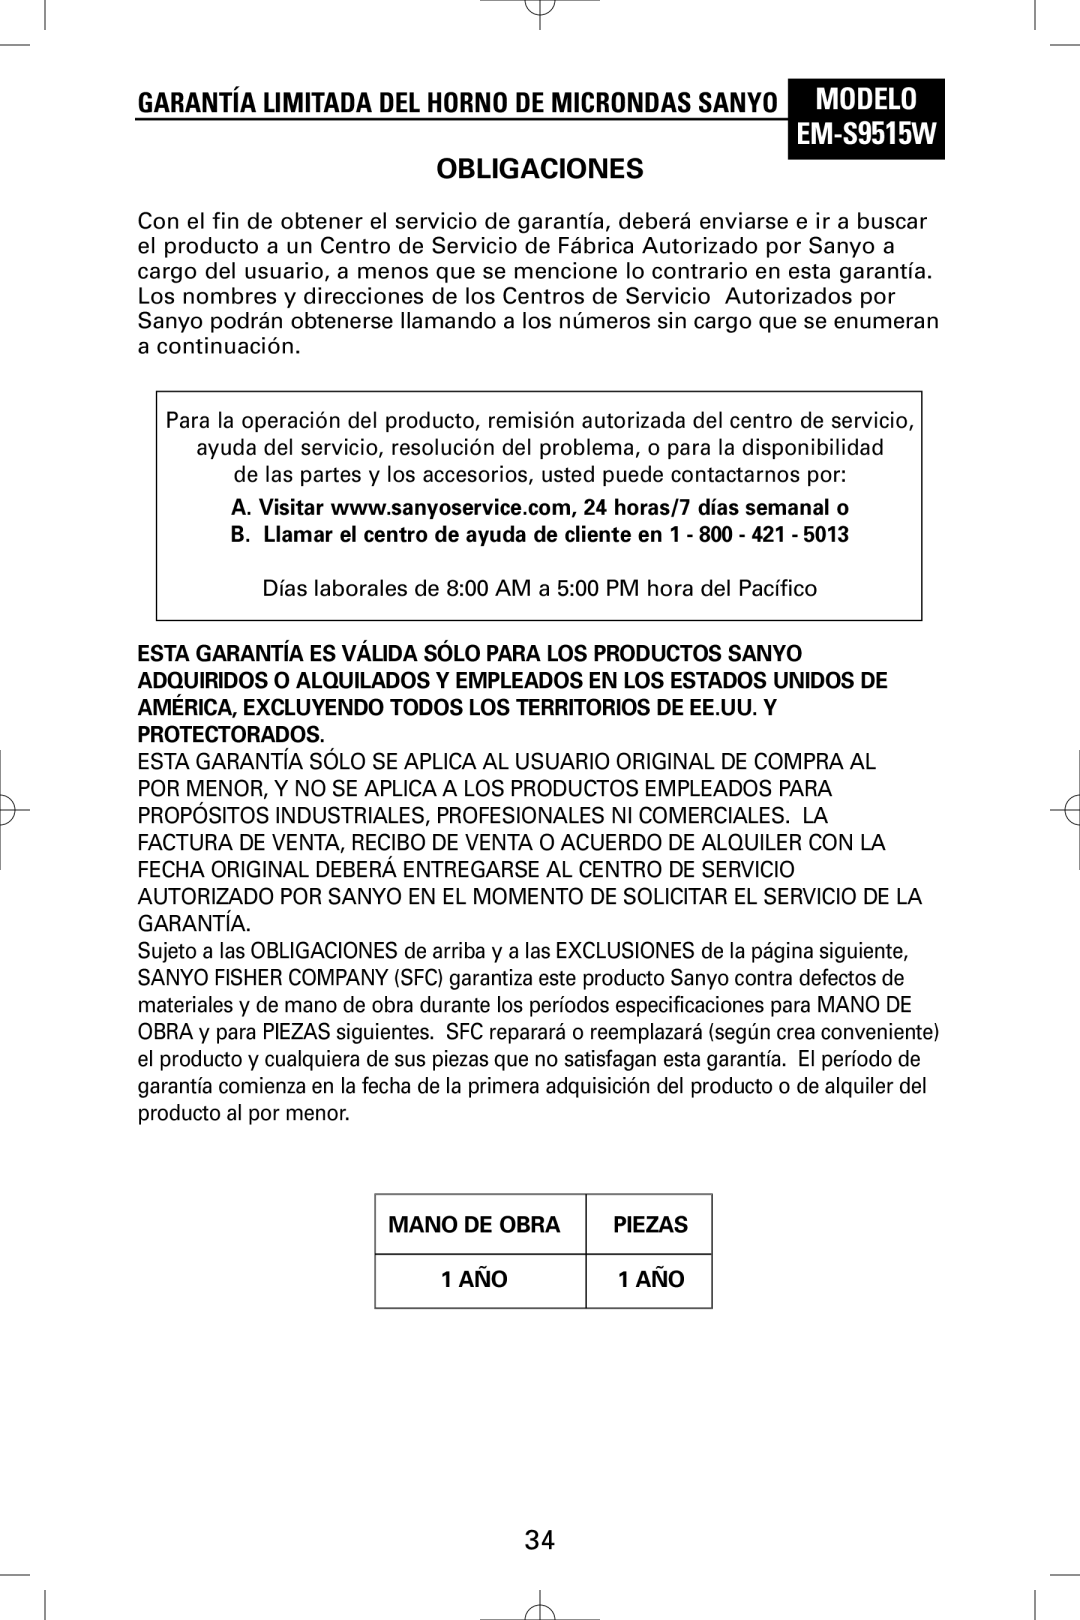 Sanyo EM-S9515W instruction manual Garantía Limitada DEL Horno DE Microndas Sanyo Modelo, Obligaciones 